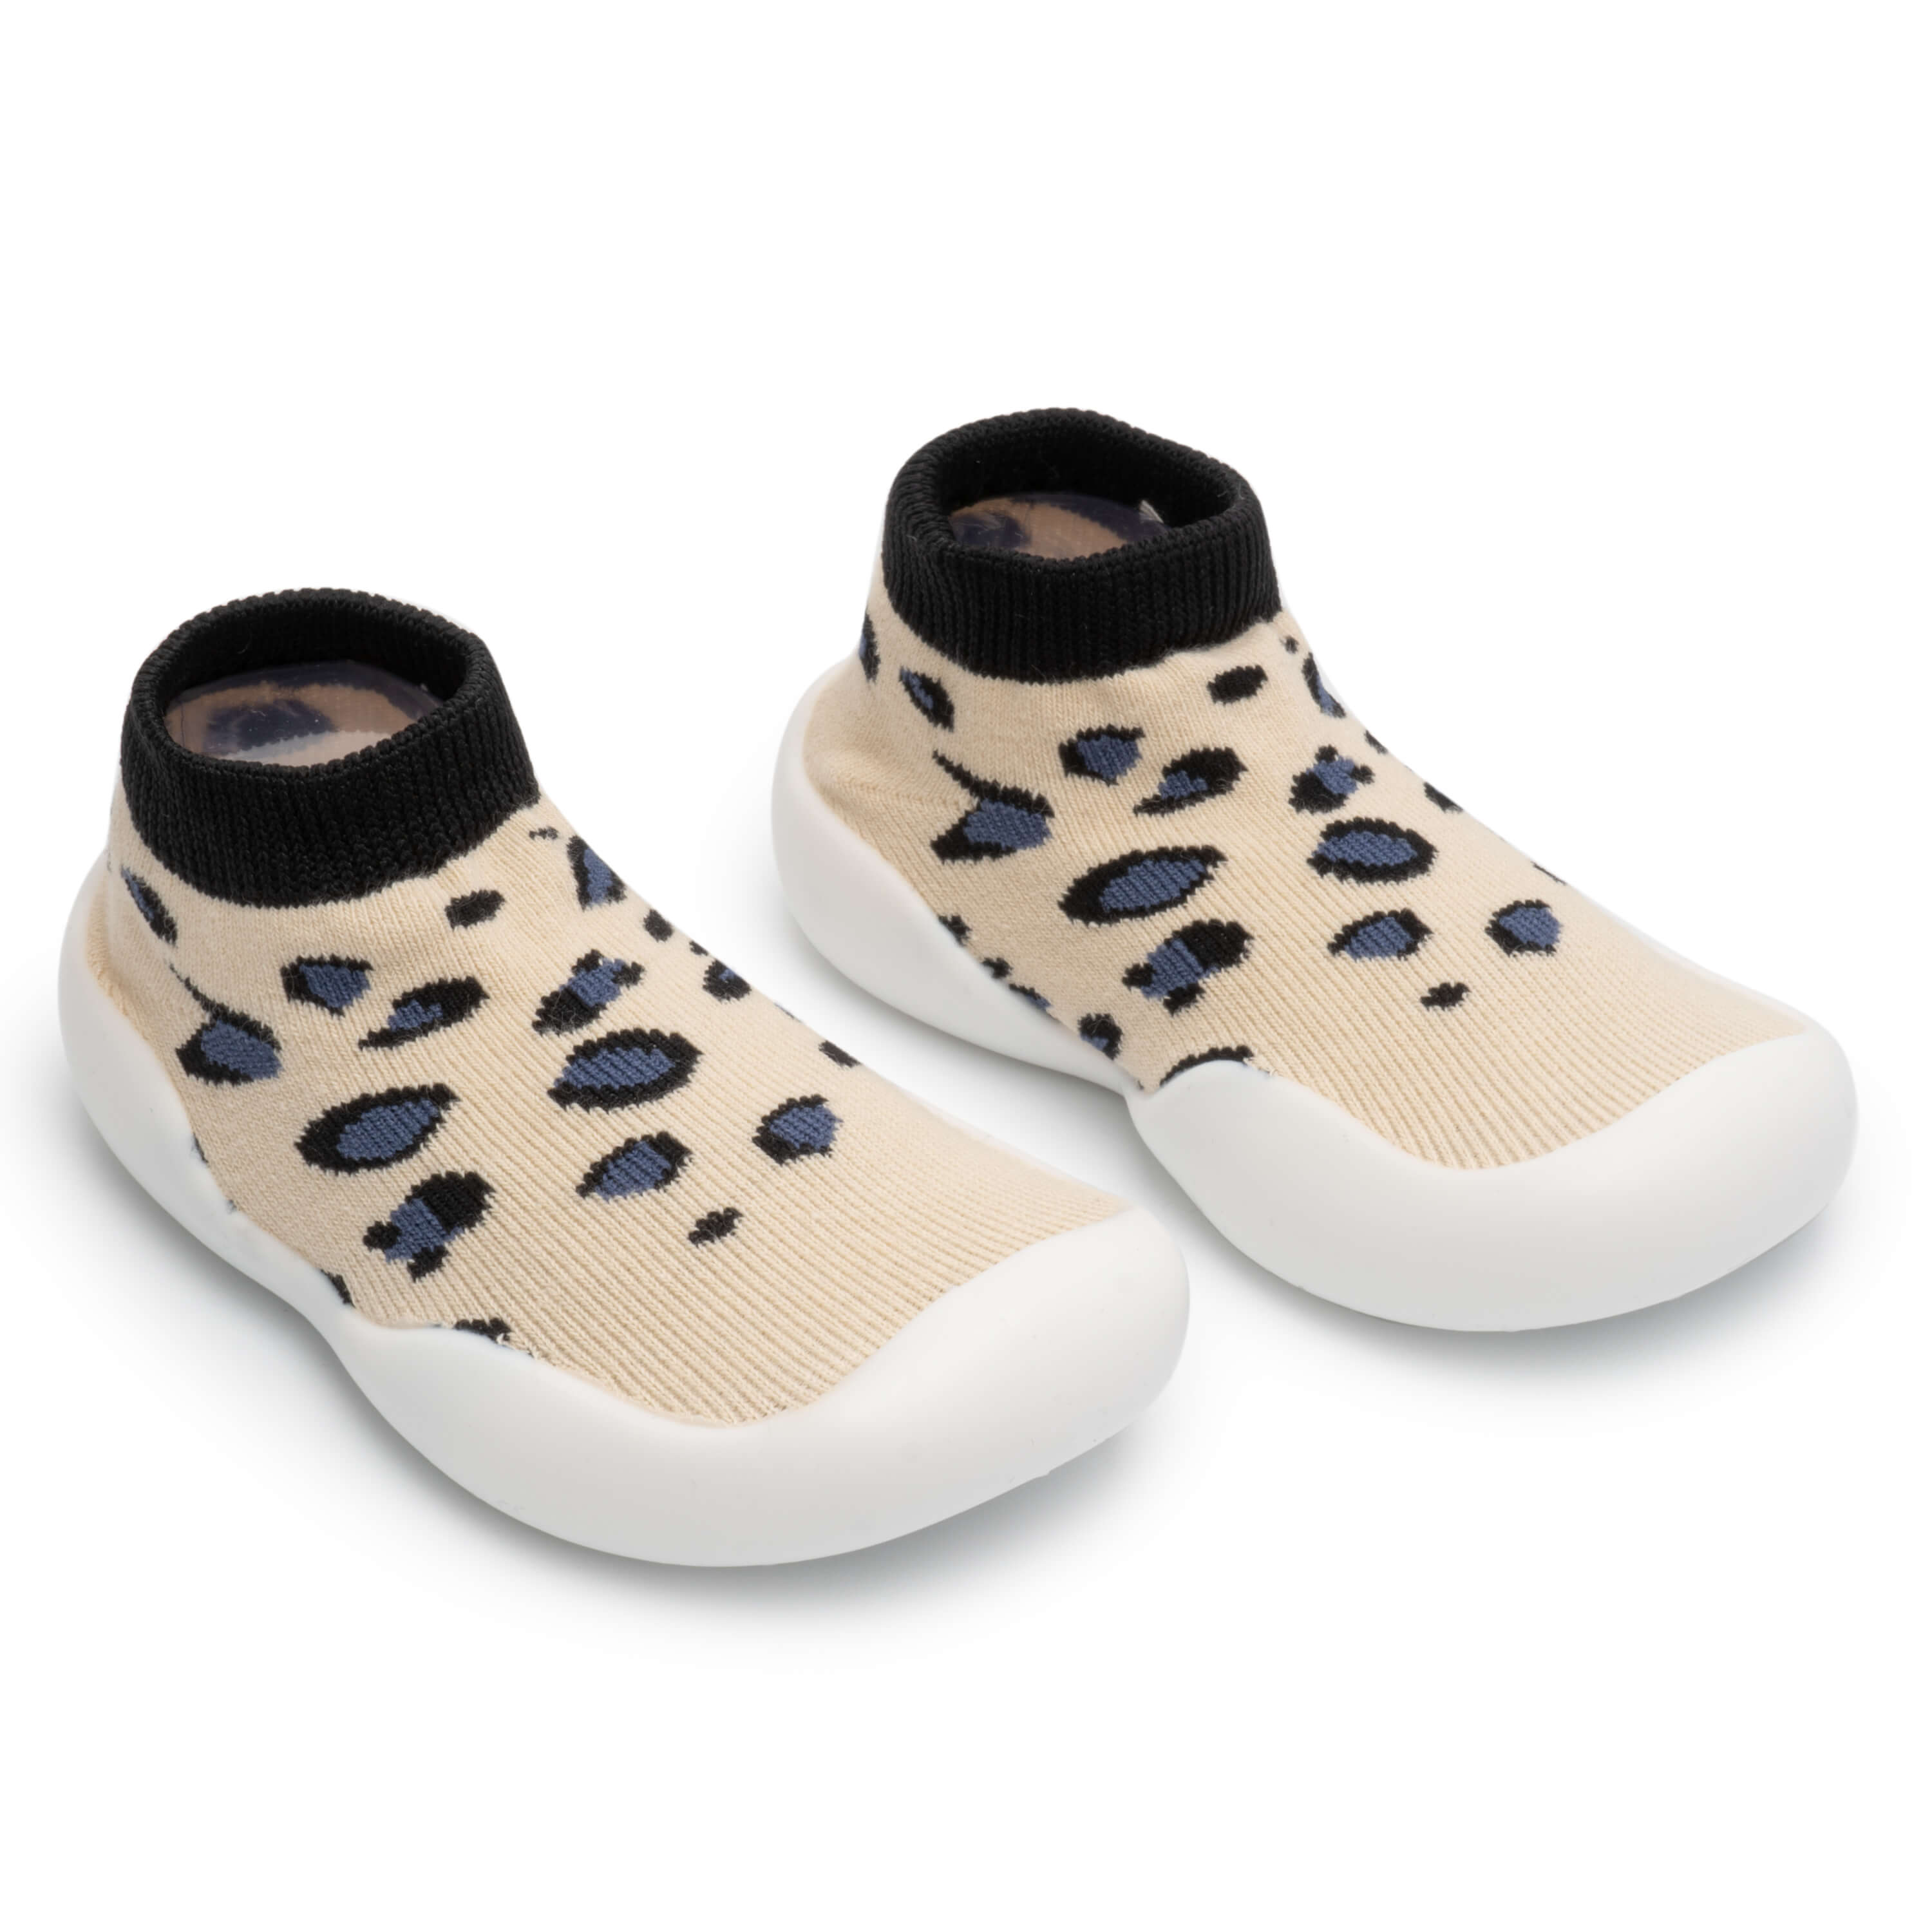 Revada - Anti-Slip Baby Schoen Sokken 1 Stuk / Luipaard Print 13-18 Maanden (20-21)